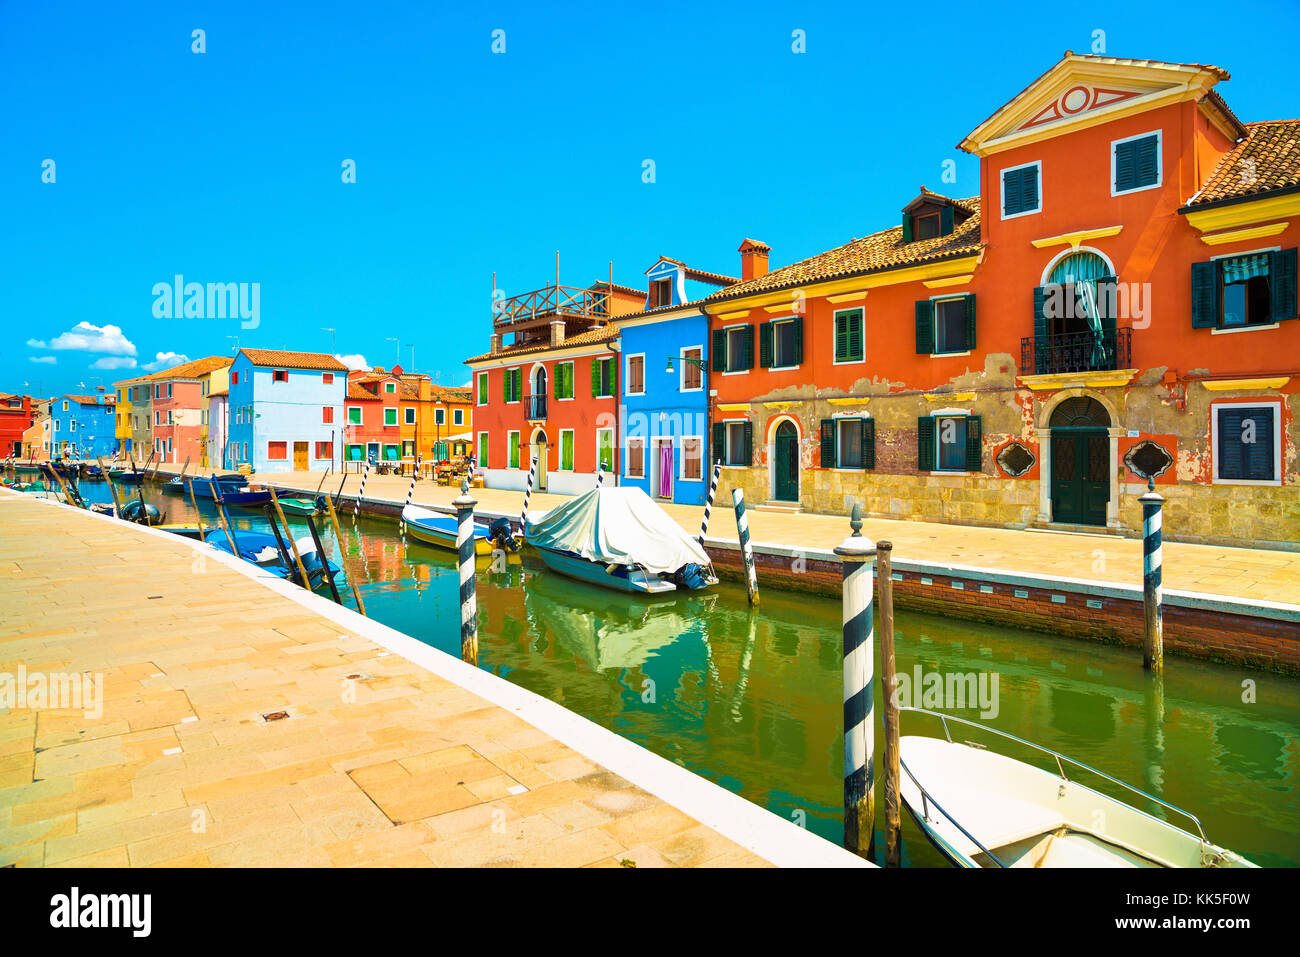 Wahrzeichen von Venedig, Burano Insel Kanal, bunte Häuser und Boote, Italien Europa Stockfoto